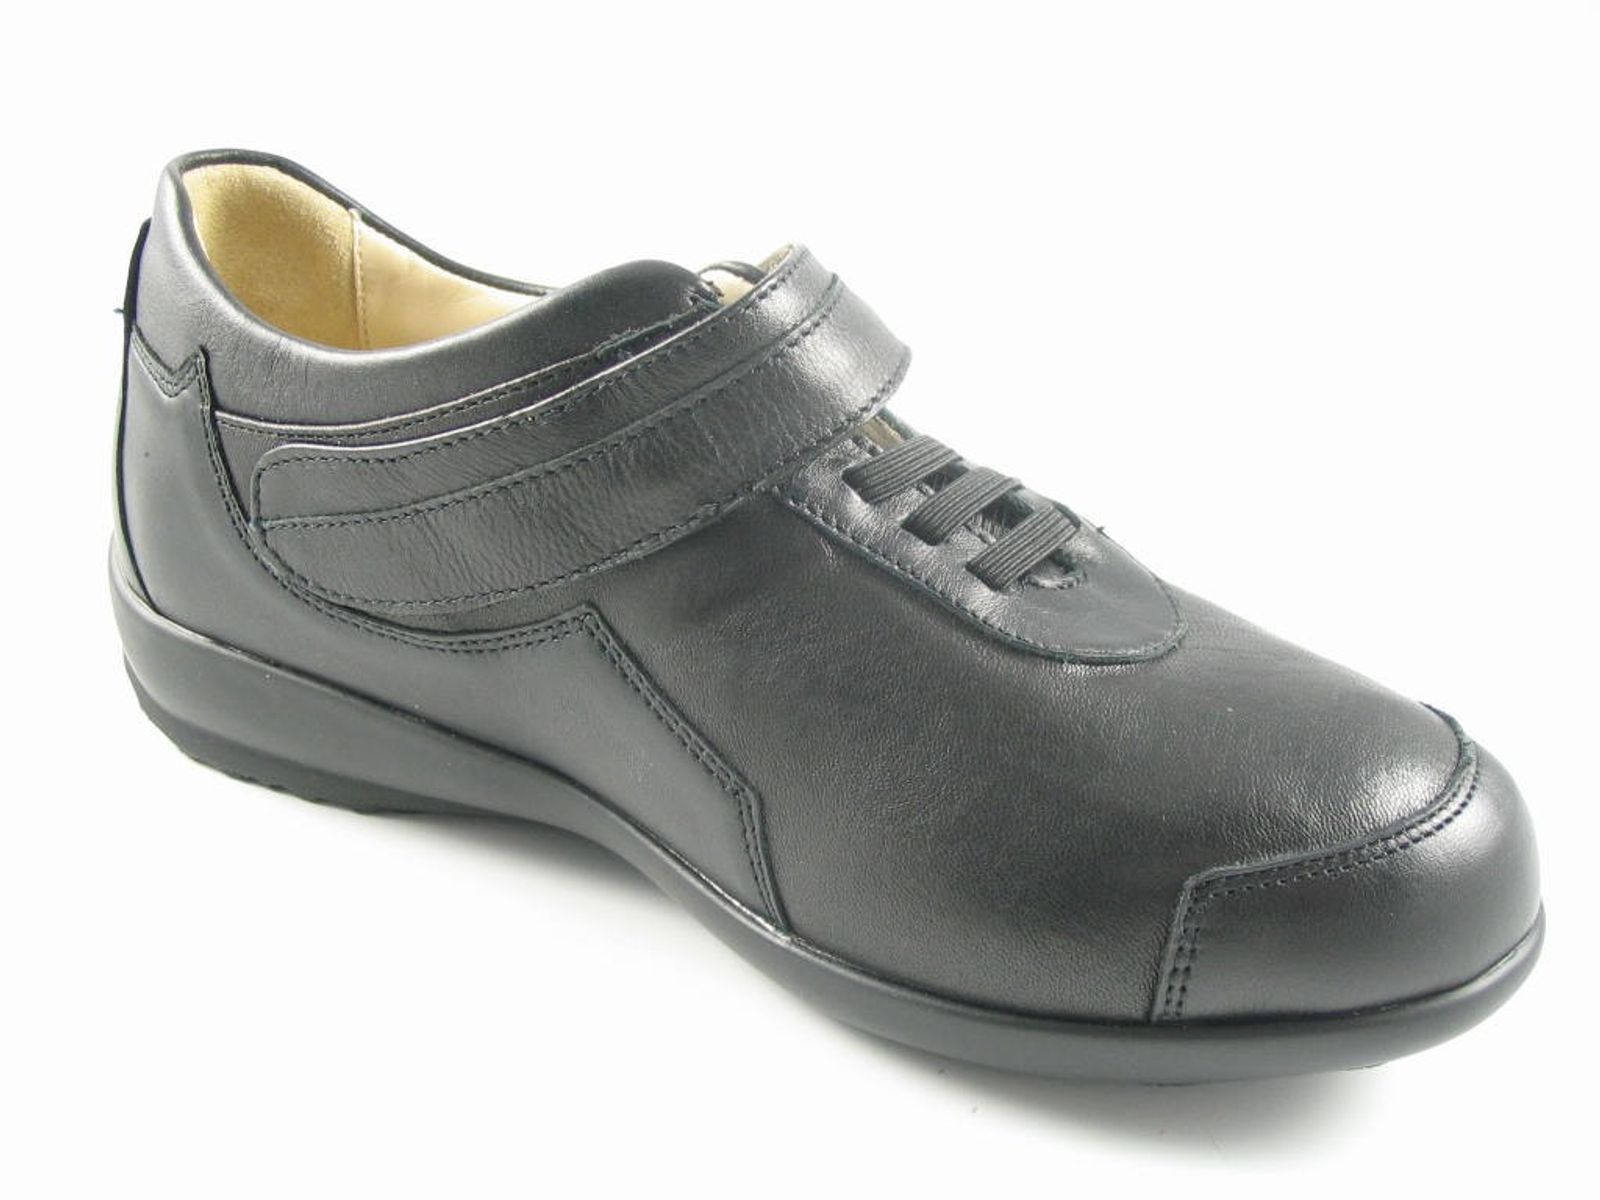 Schuh von Acti Flex, 6½